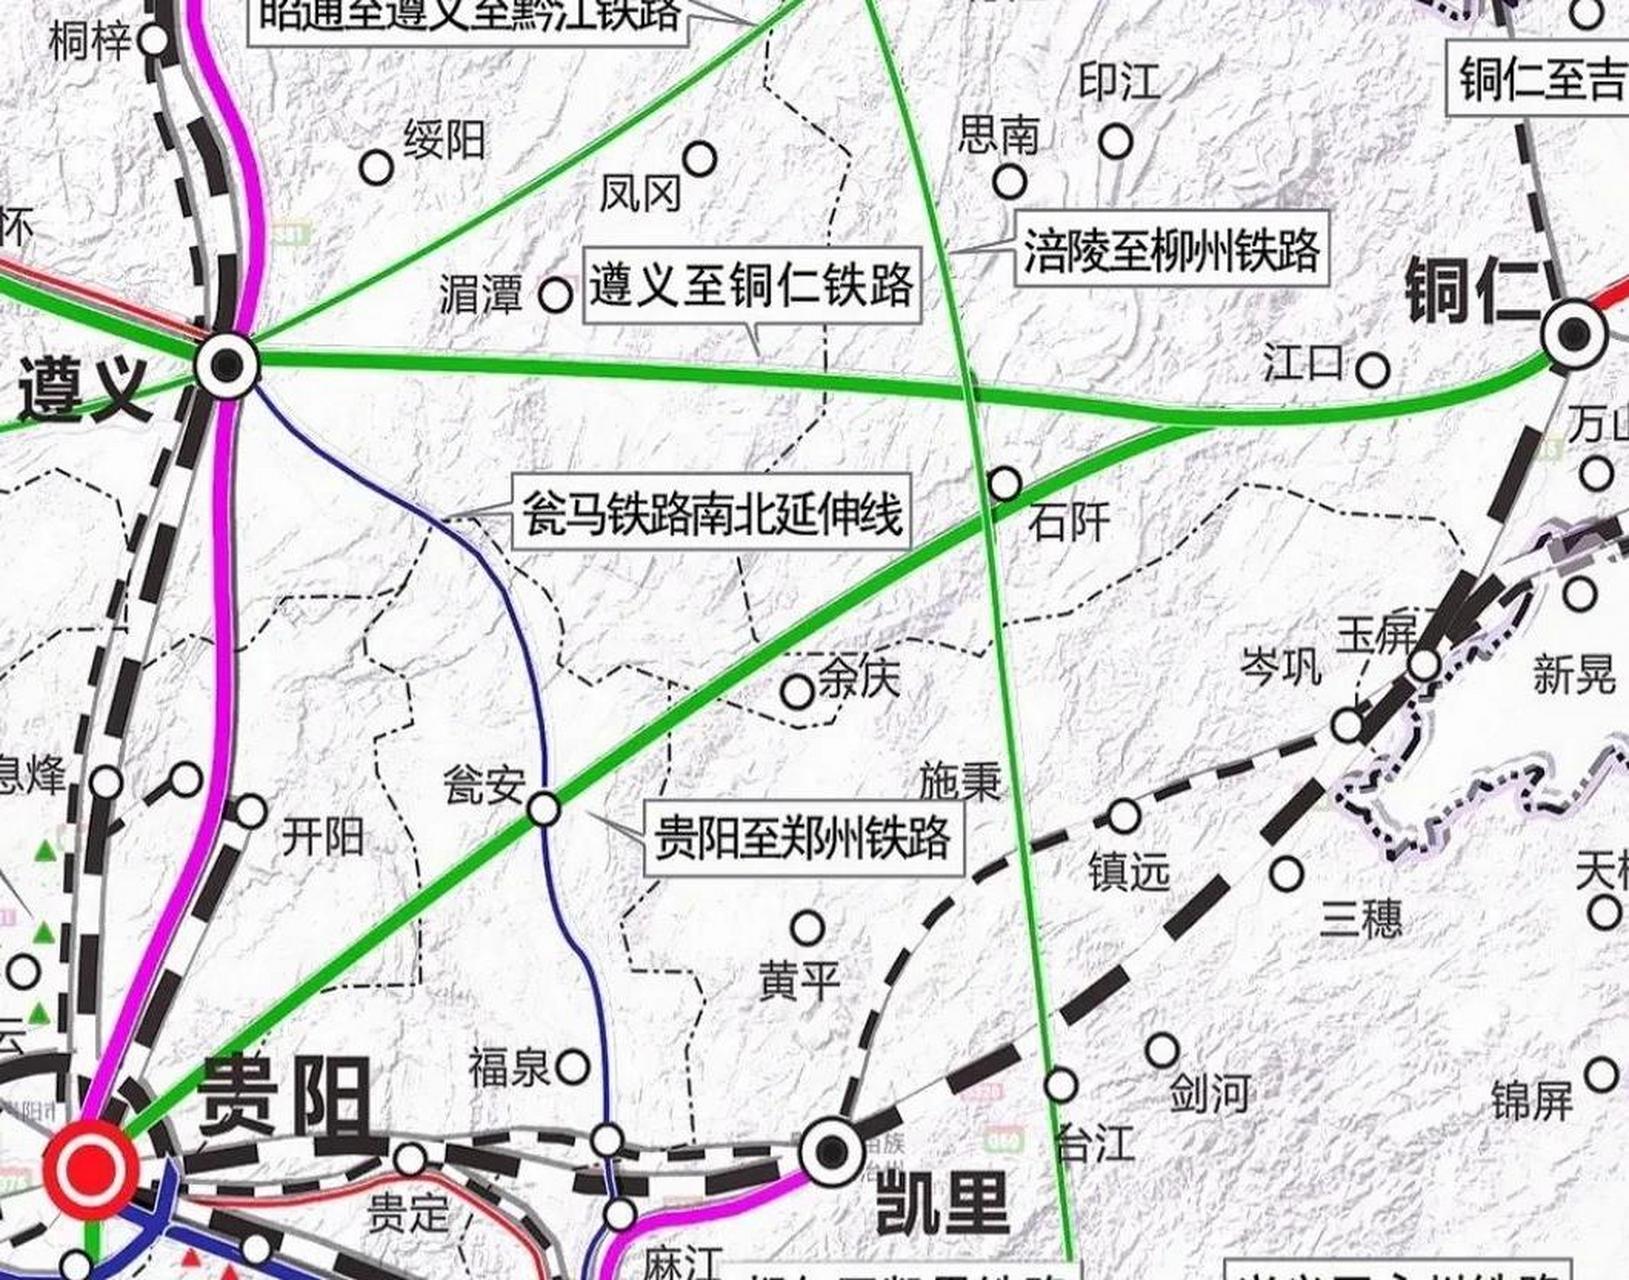 贵阳至郑州高铁通道基本线路已基本敲定,这让不少人开始期待这条高铁